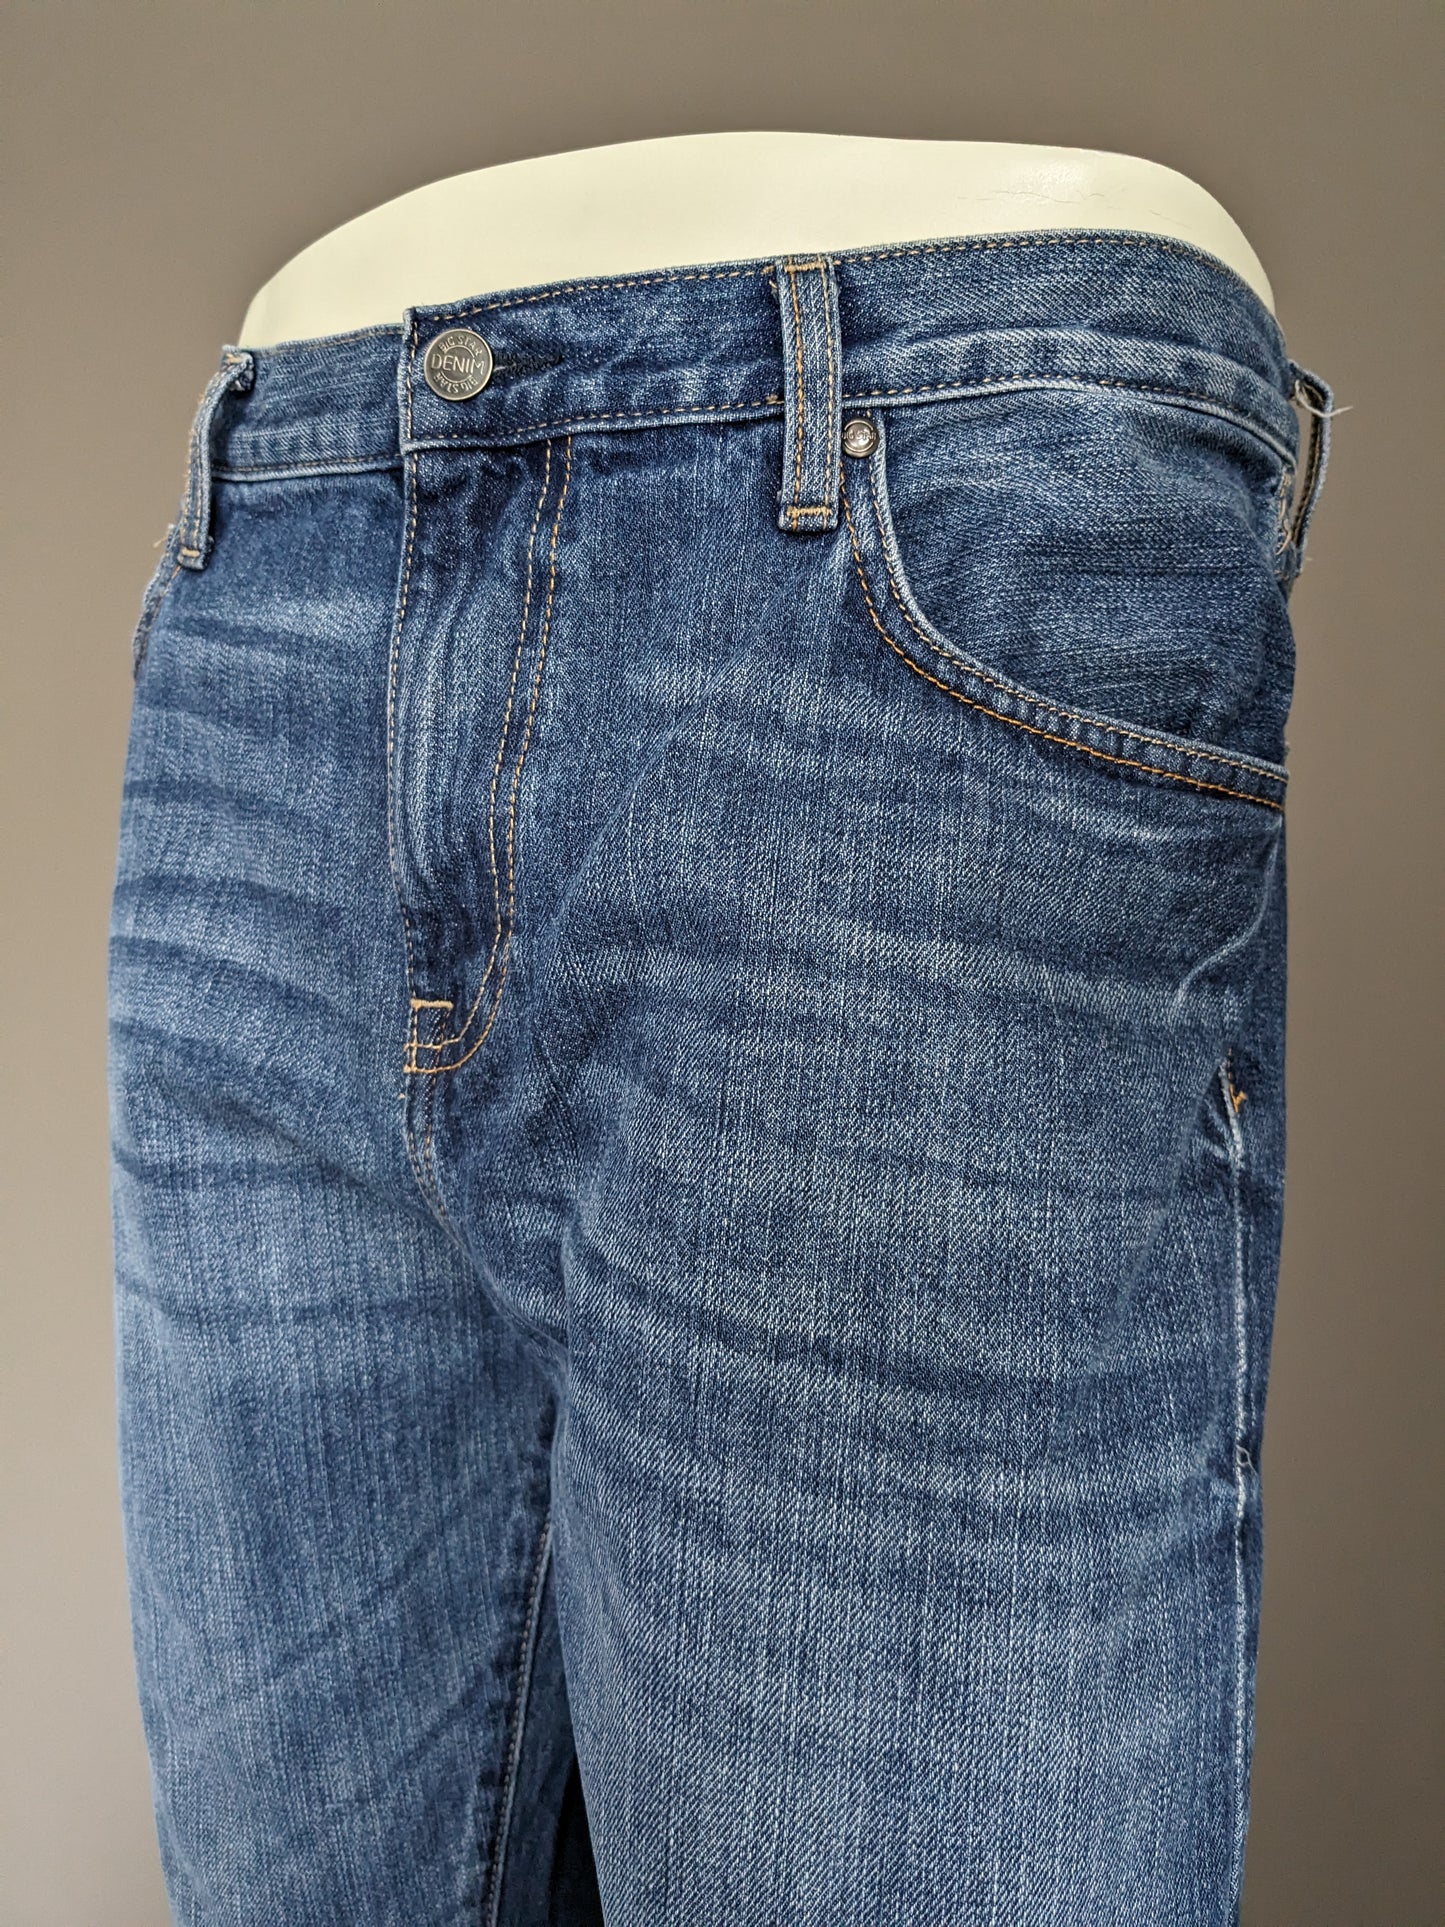 Big Star Jeans. Couleur bleue. Tapez Rogar. Ajustement régulier. Taille W36 - L32.